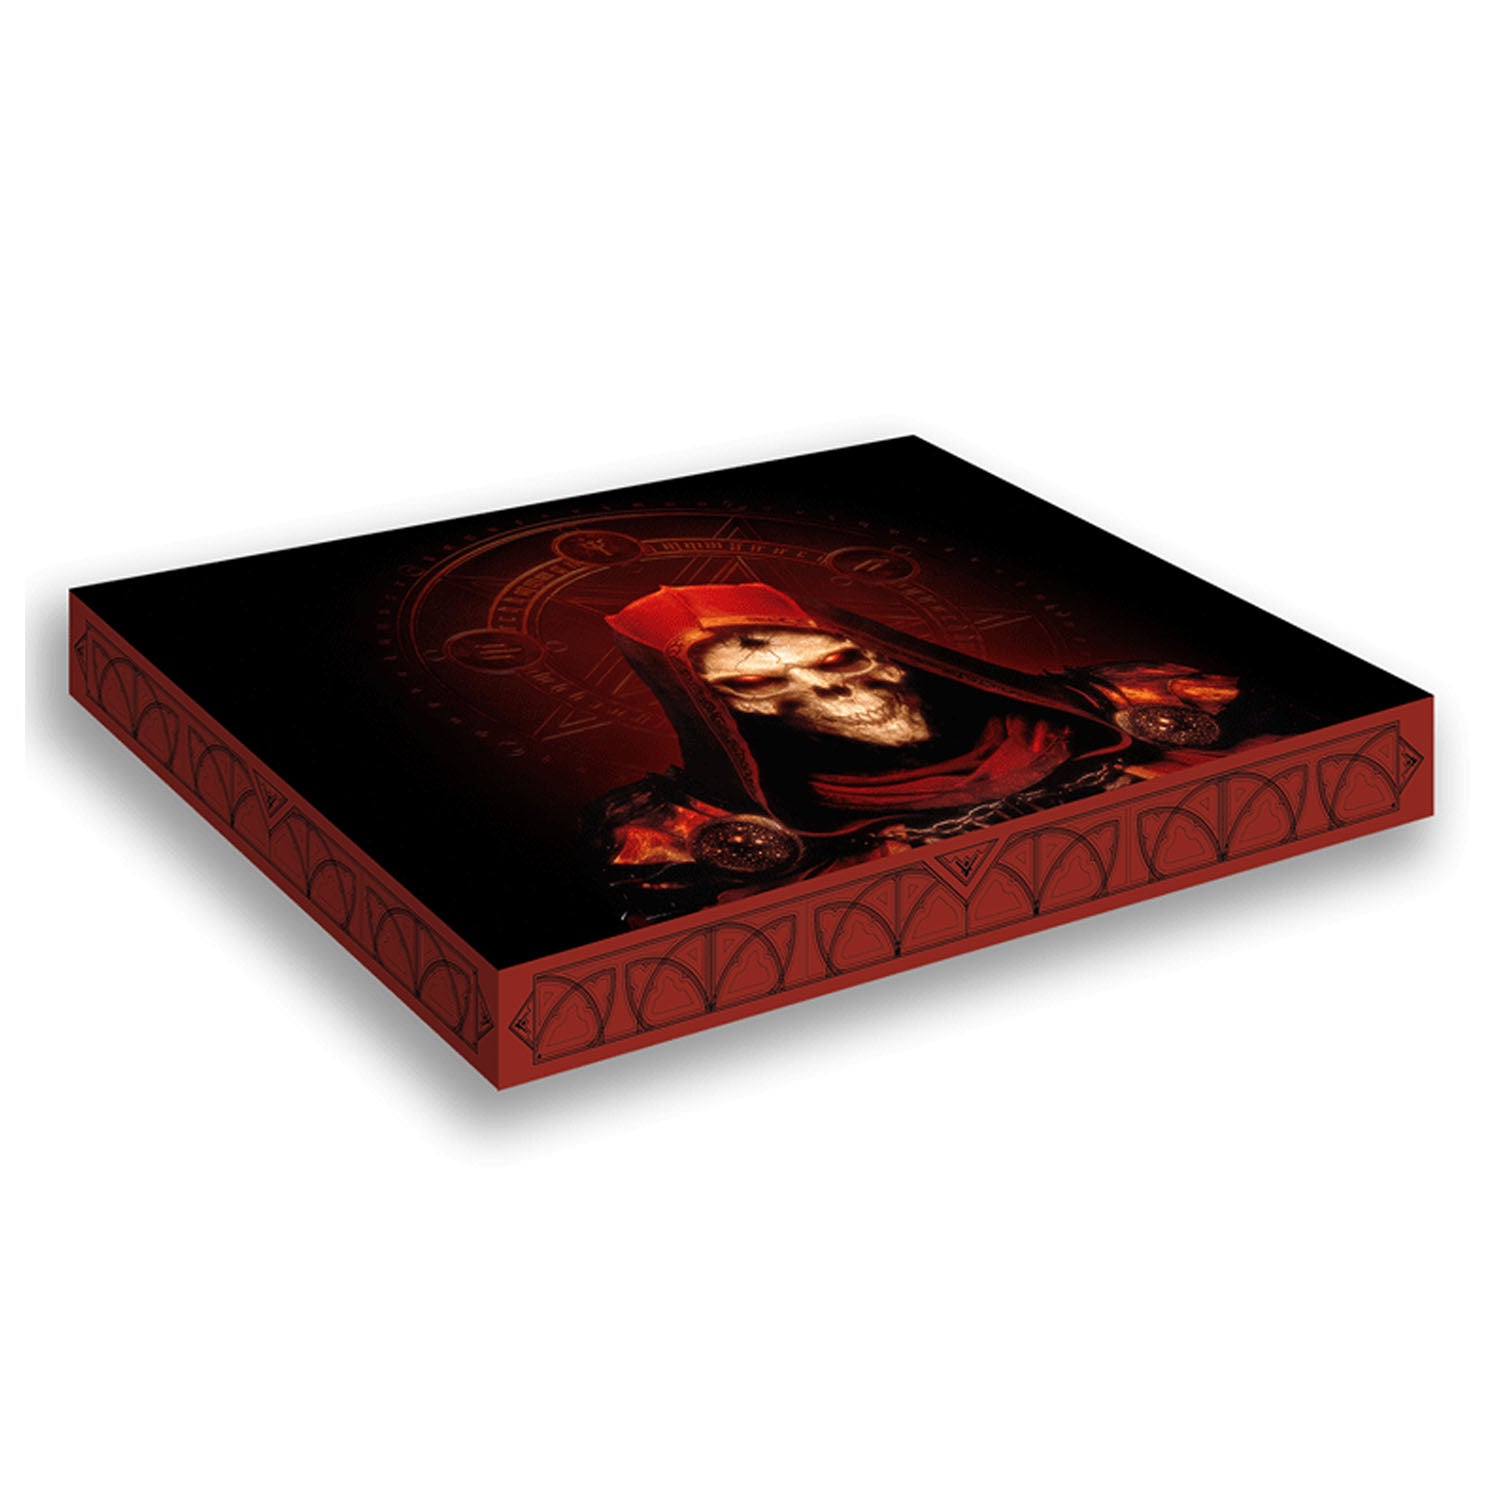 Diablo II: Resurrected 3xLP Deluxe Box Set - Above View of Box Set